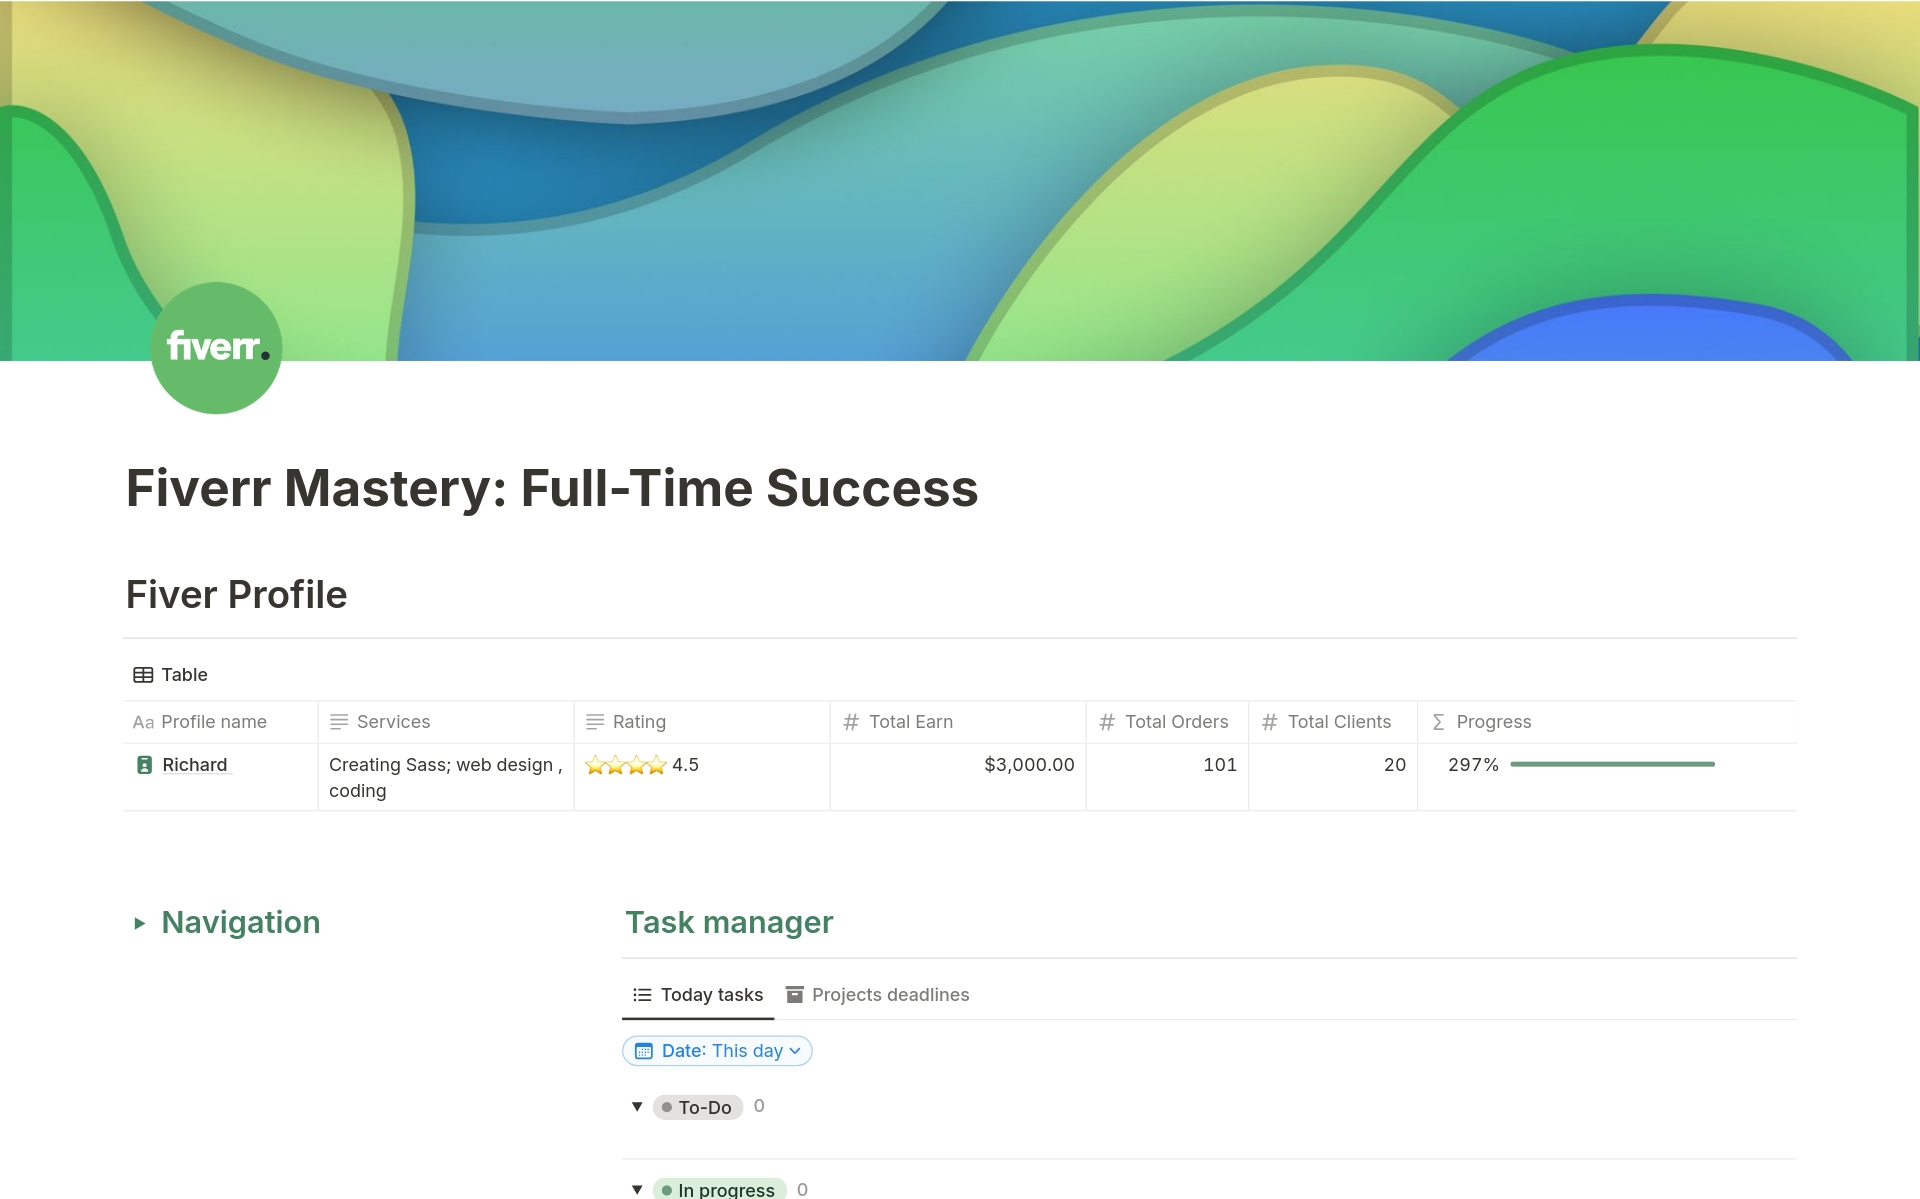 Uma prévia do modelo para Fiverr Mastery: Full-Time Success